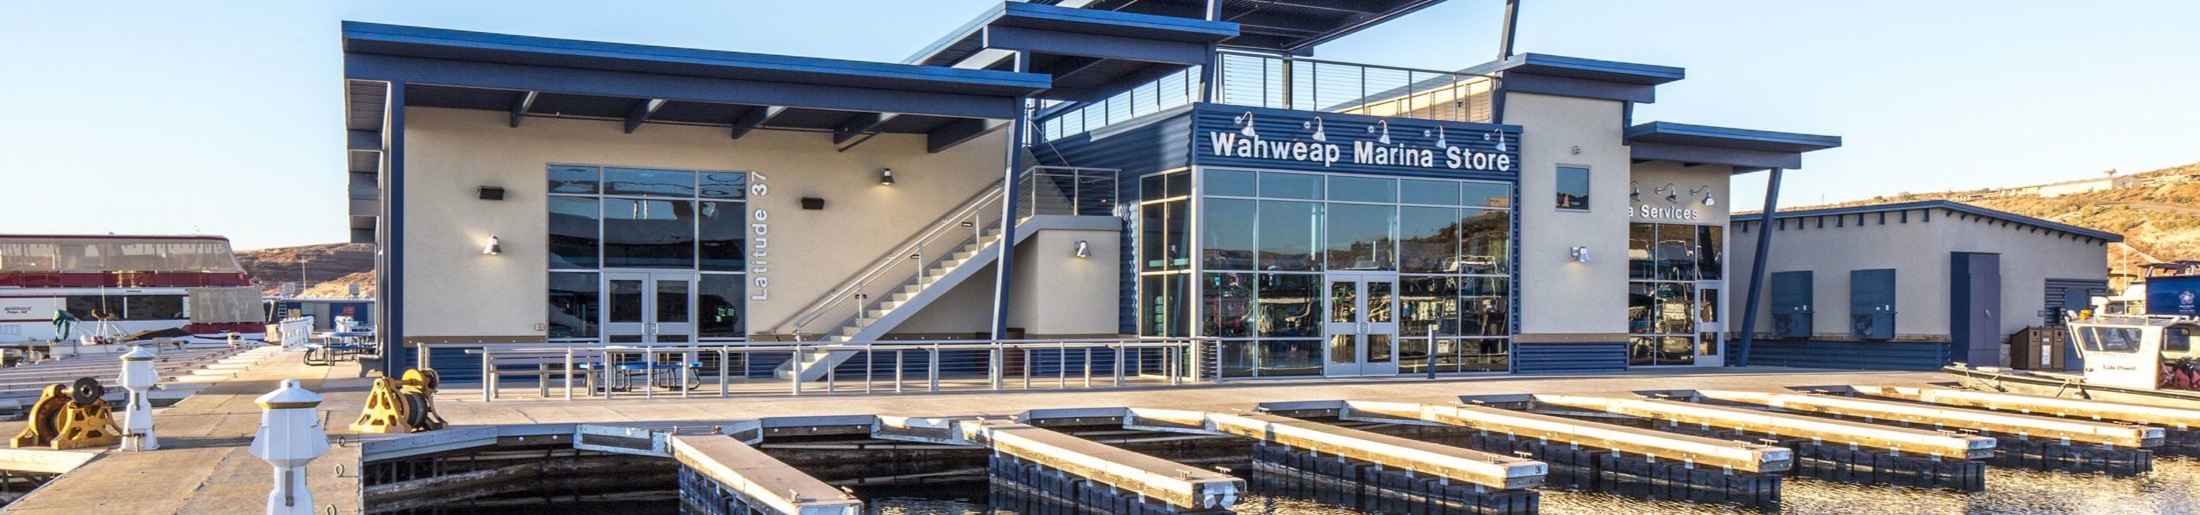 Wahweap Marina Store on South Lake Powell